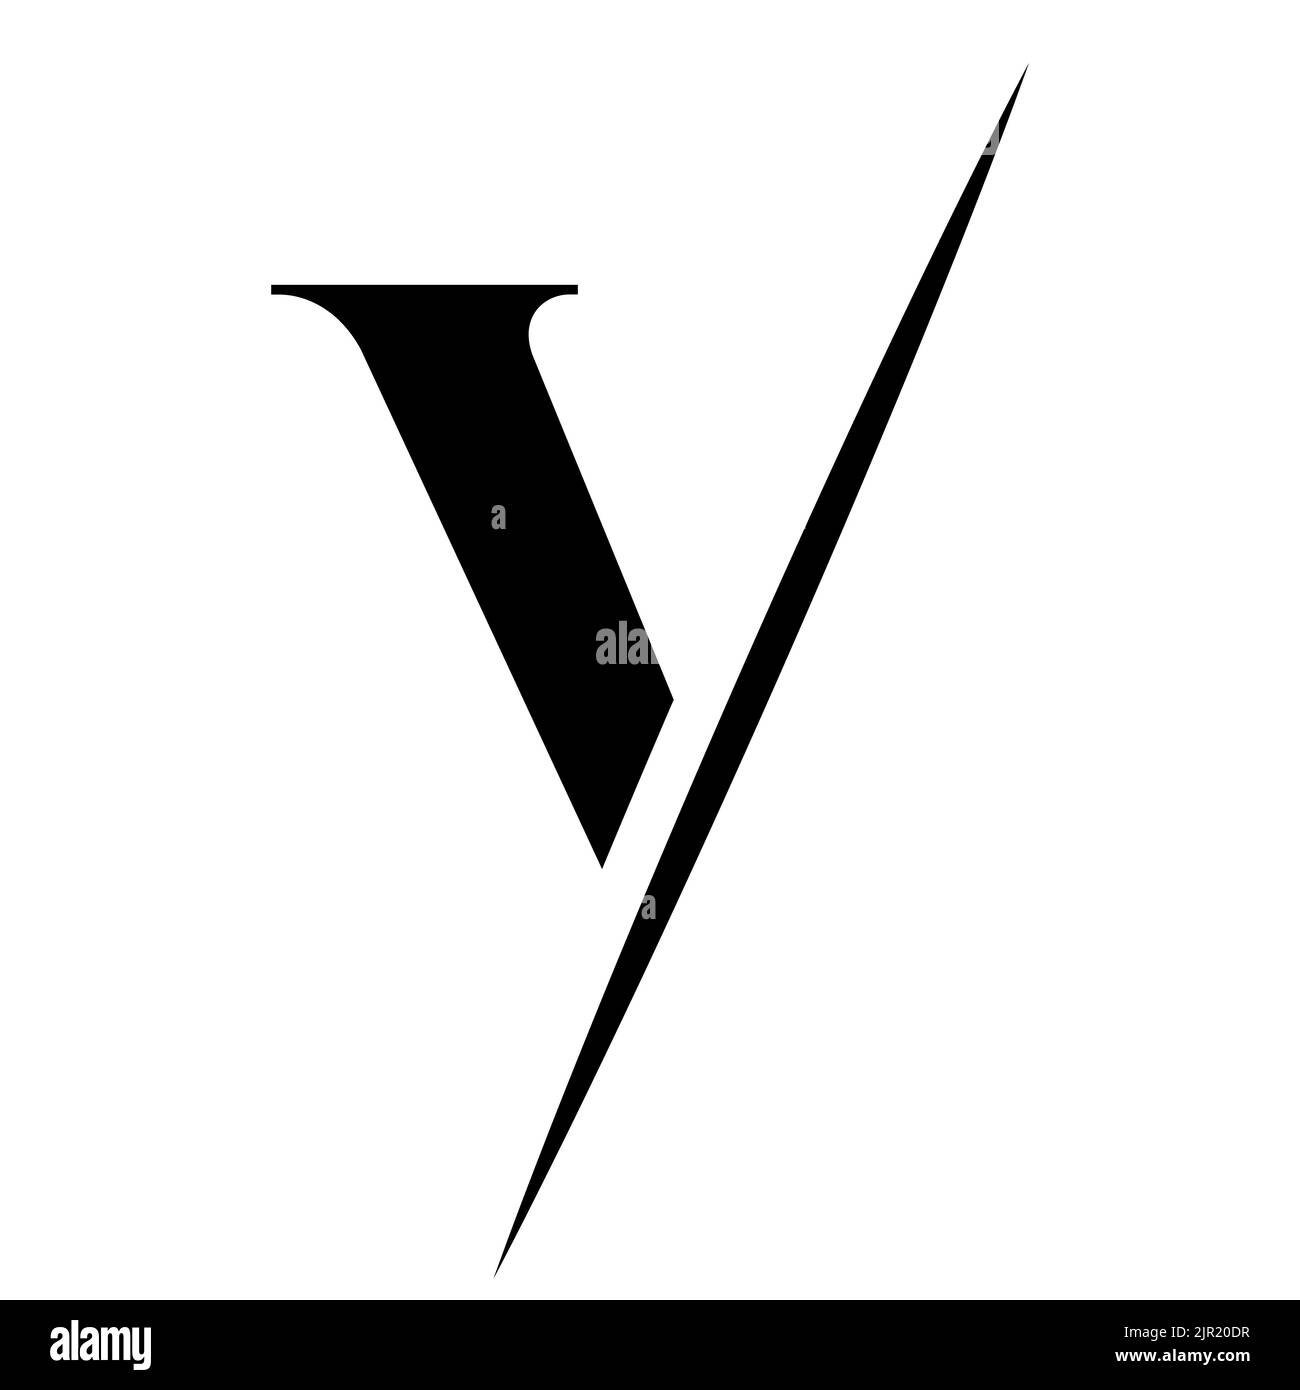 Lettera V Luxury, Beauty and Fashion Logo Design . Modello vettoriale di progettazione del logotipo V Monogram Letter V. Illustrazione Vettoriale